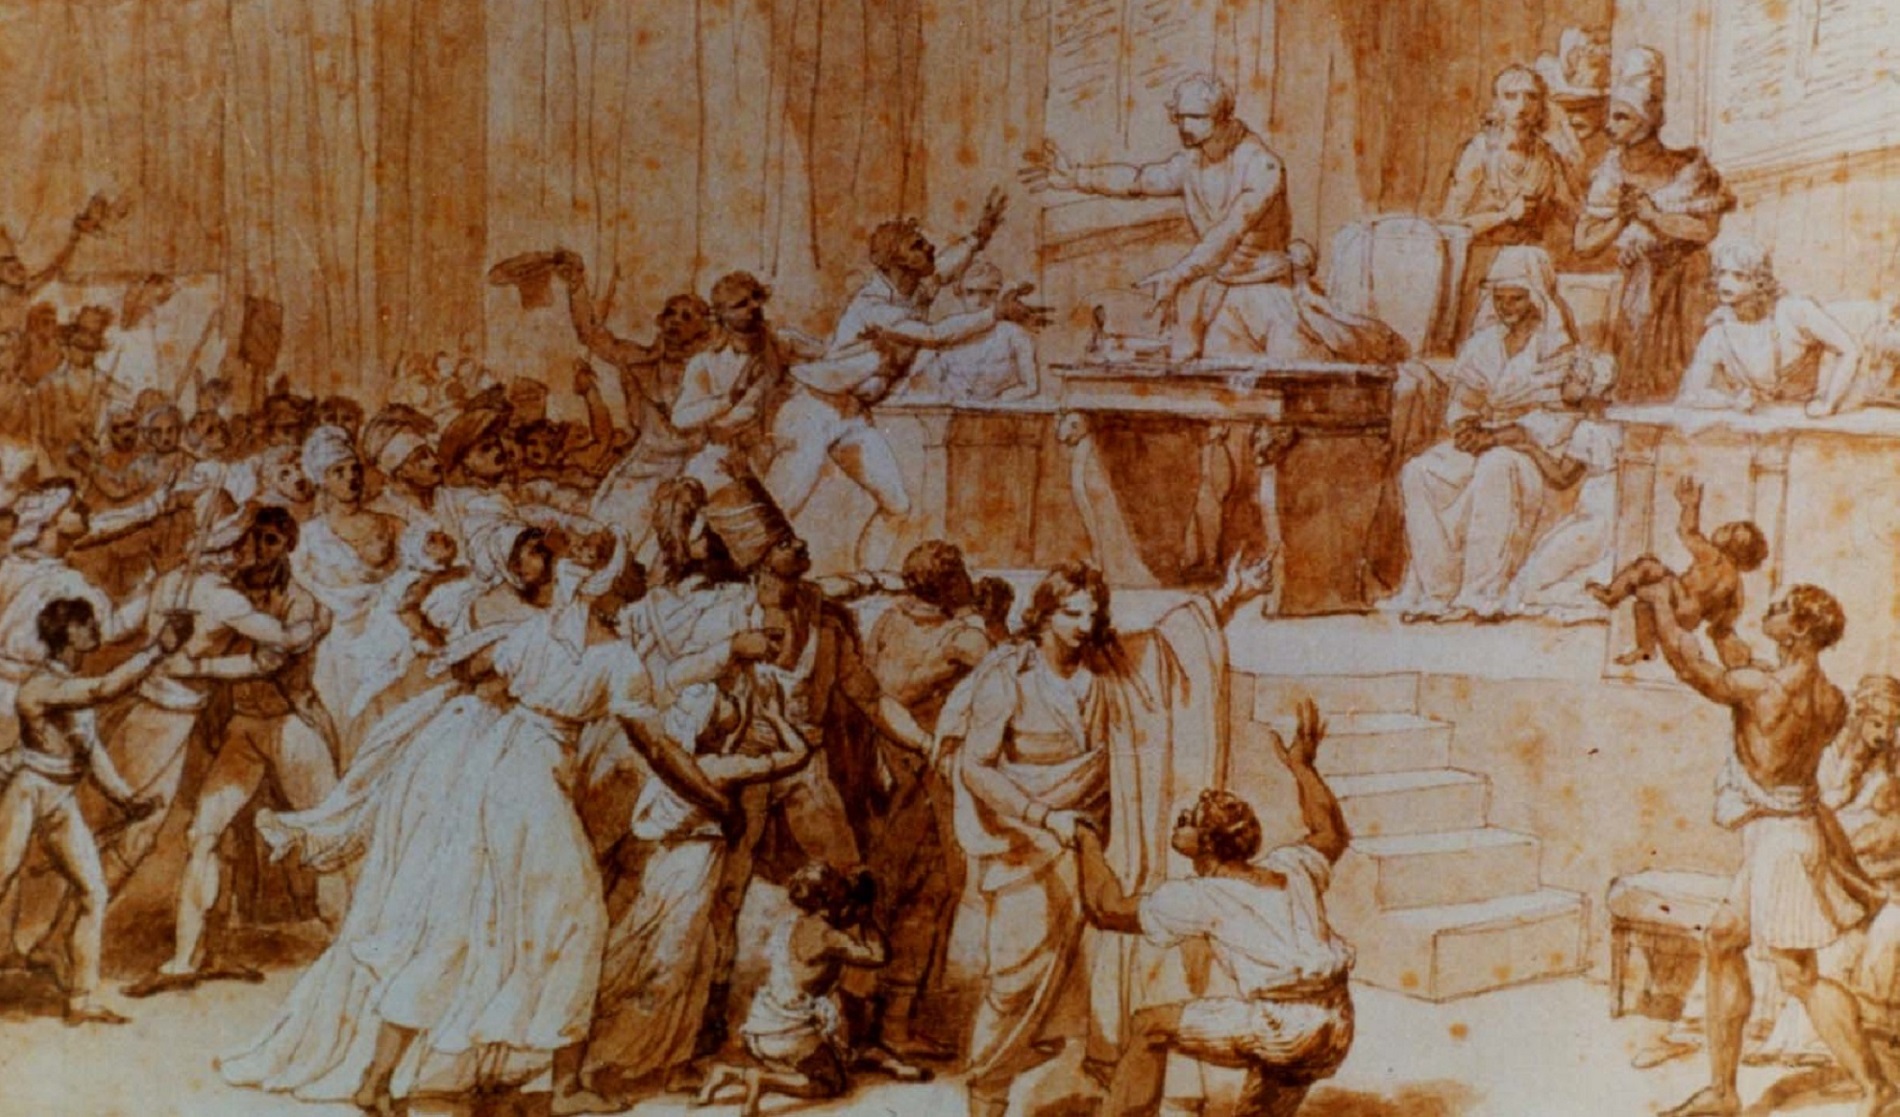 Histoire la première abolition de l esclavage en France